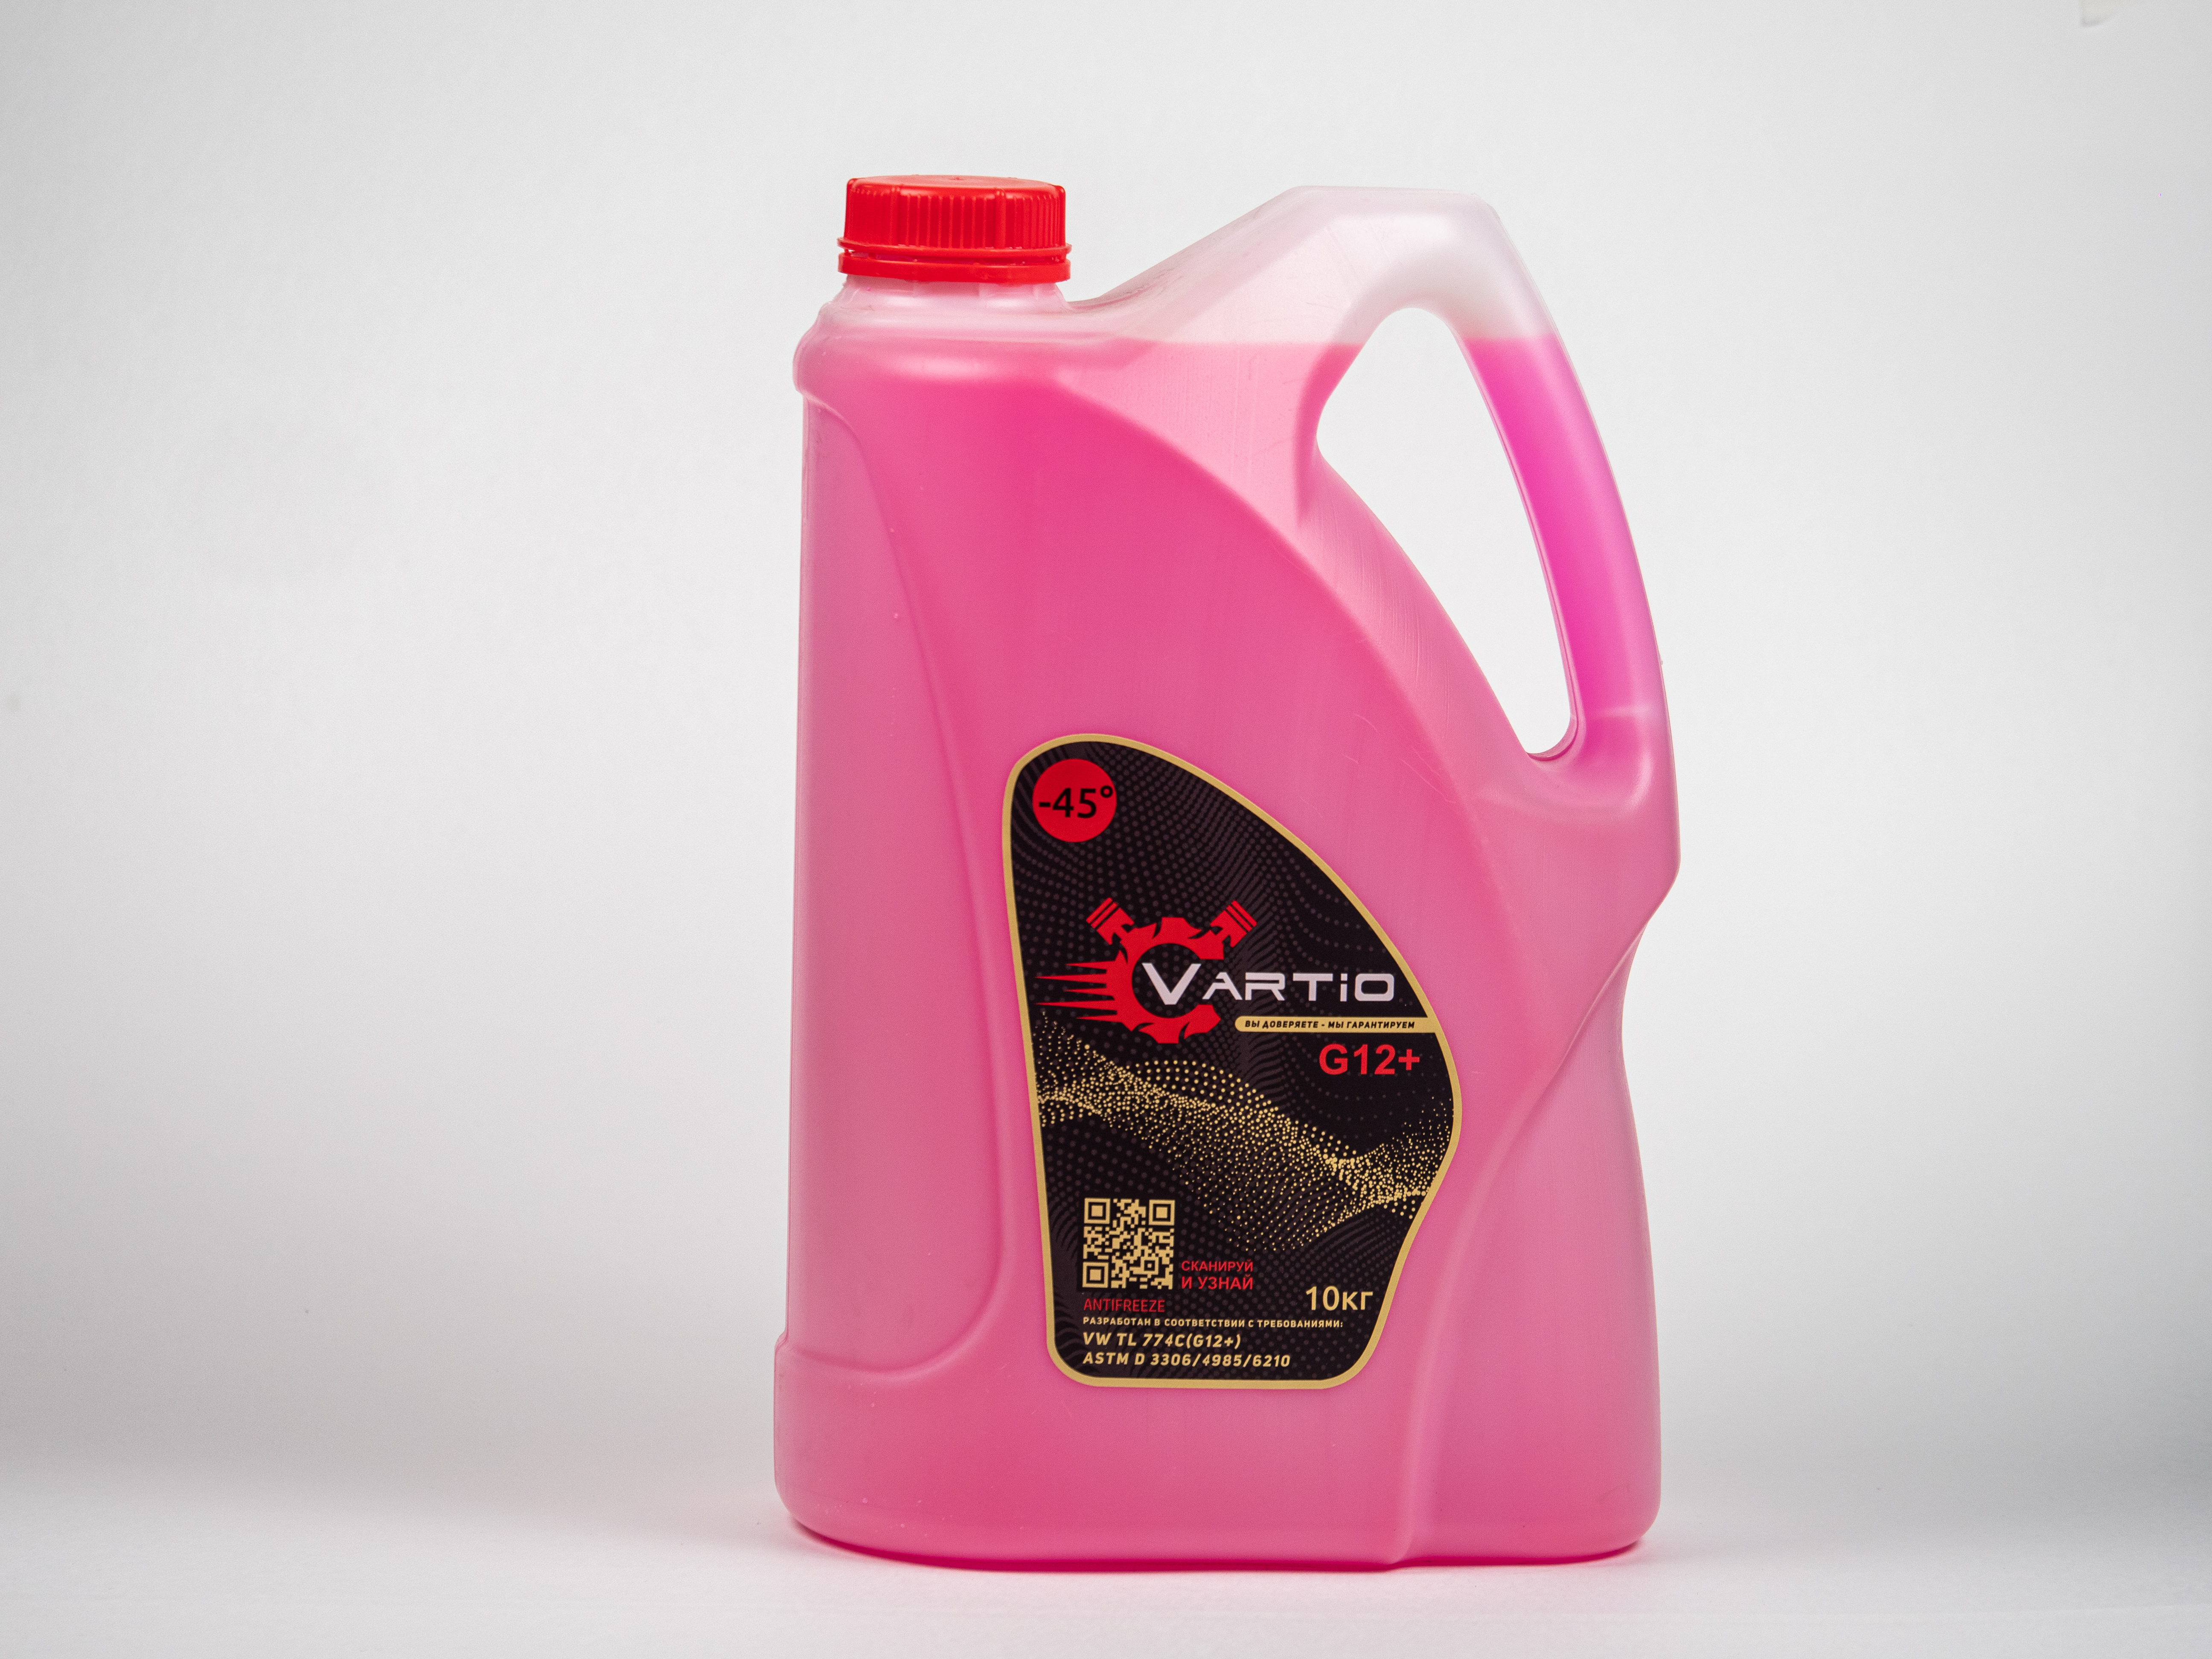 Антифриз Vartio G12+ (-45) красный(розовый) 10 кг